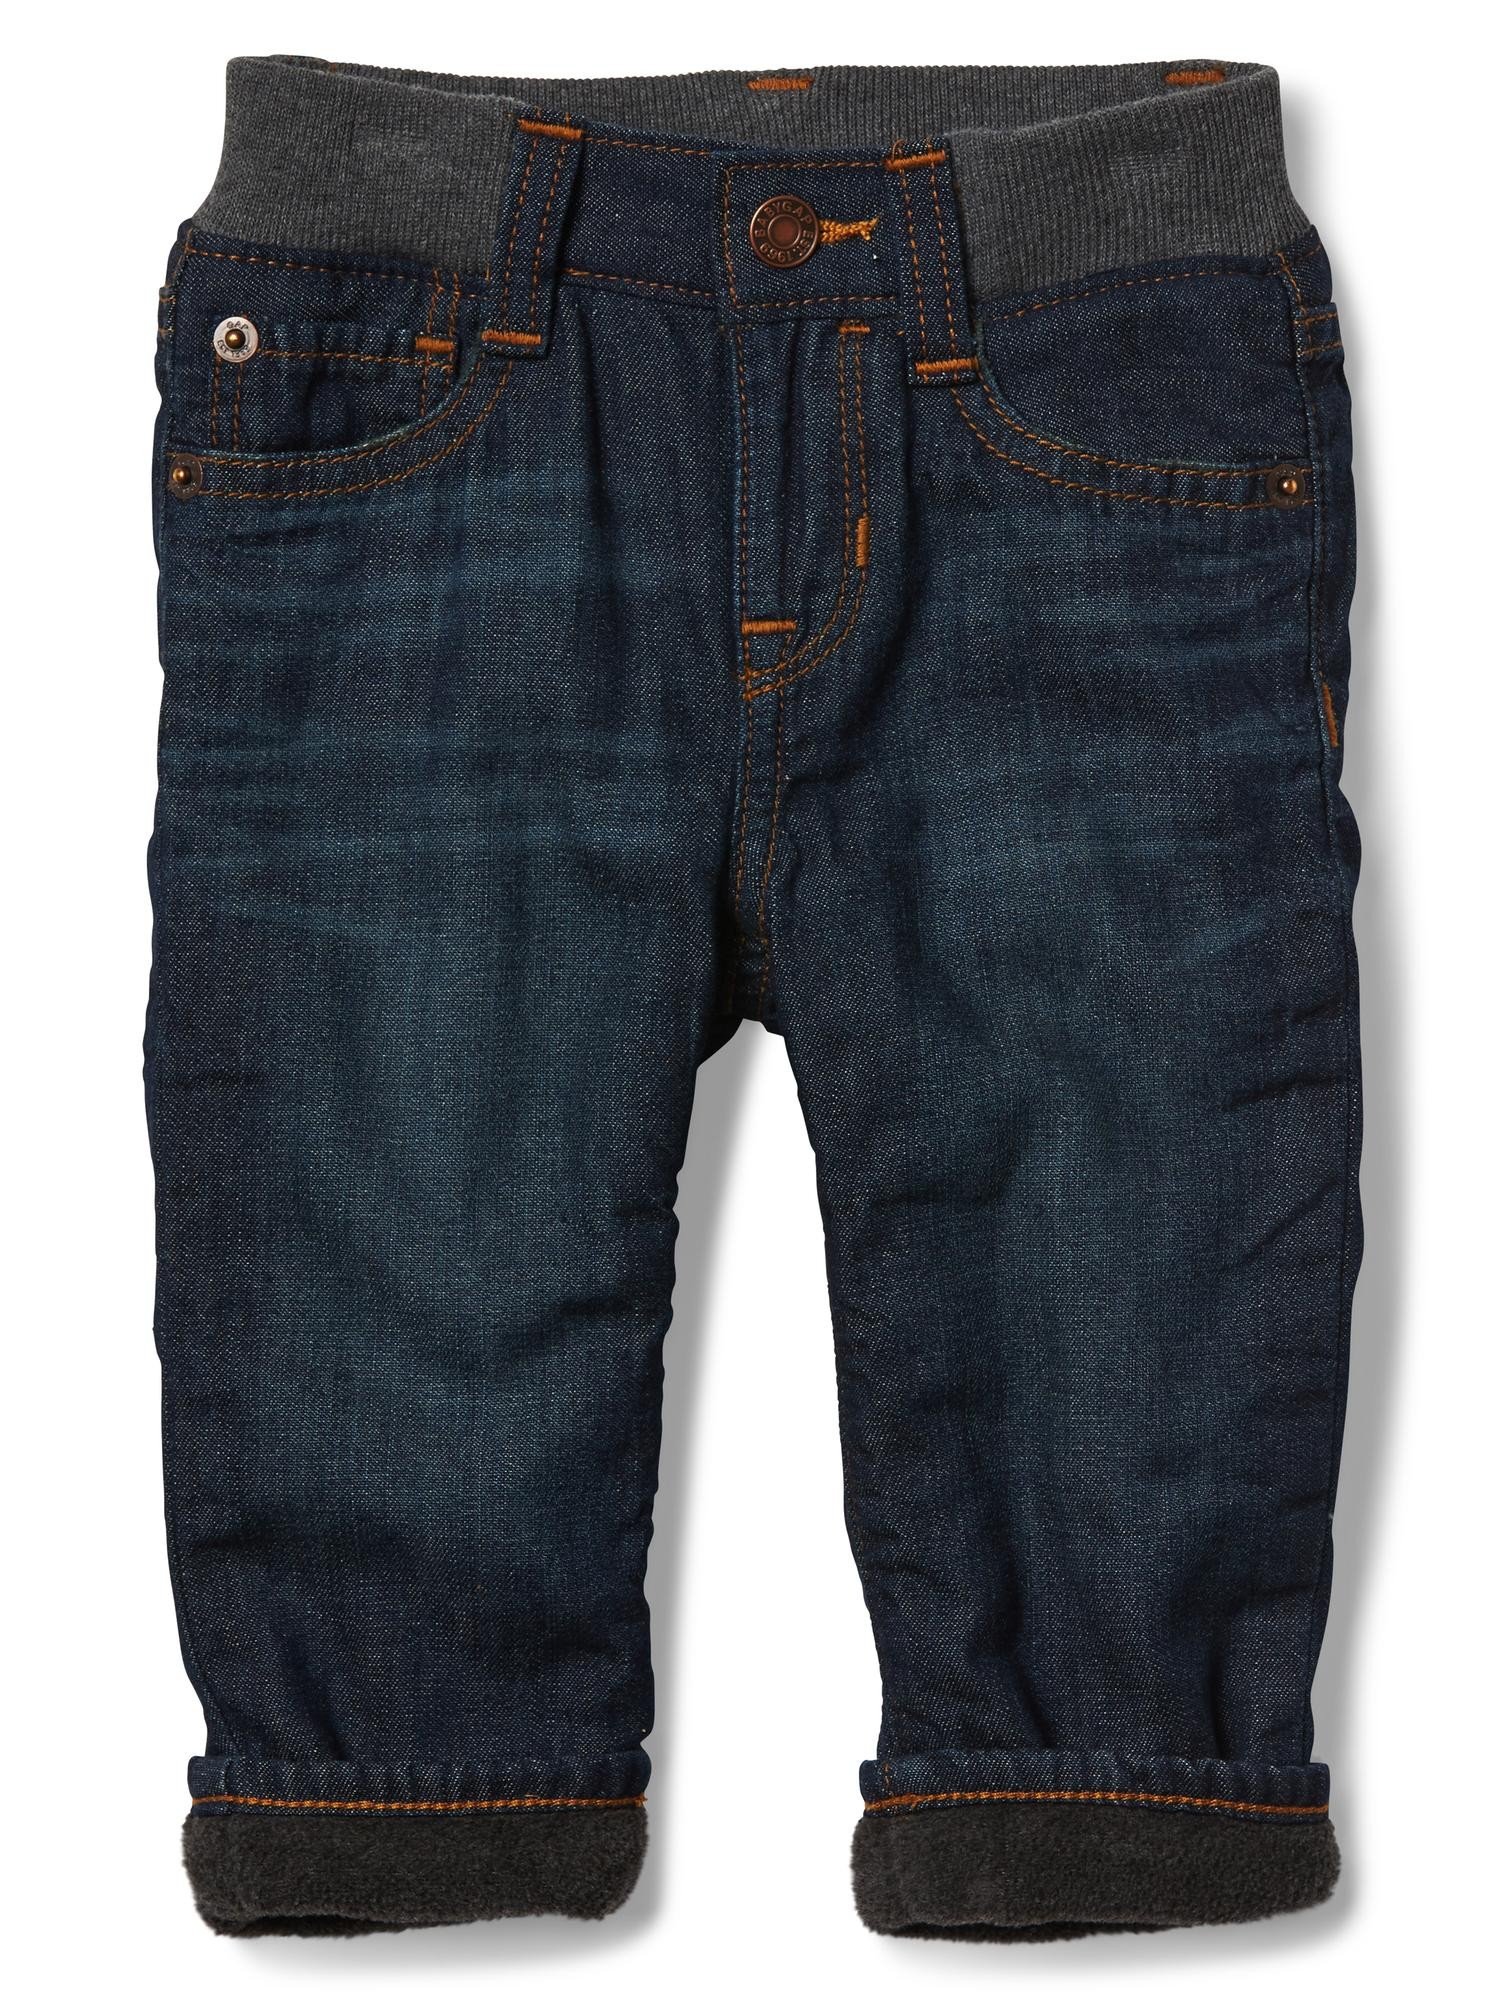 İçi koyun yünlü düz paça jean pantolon product image